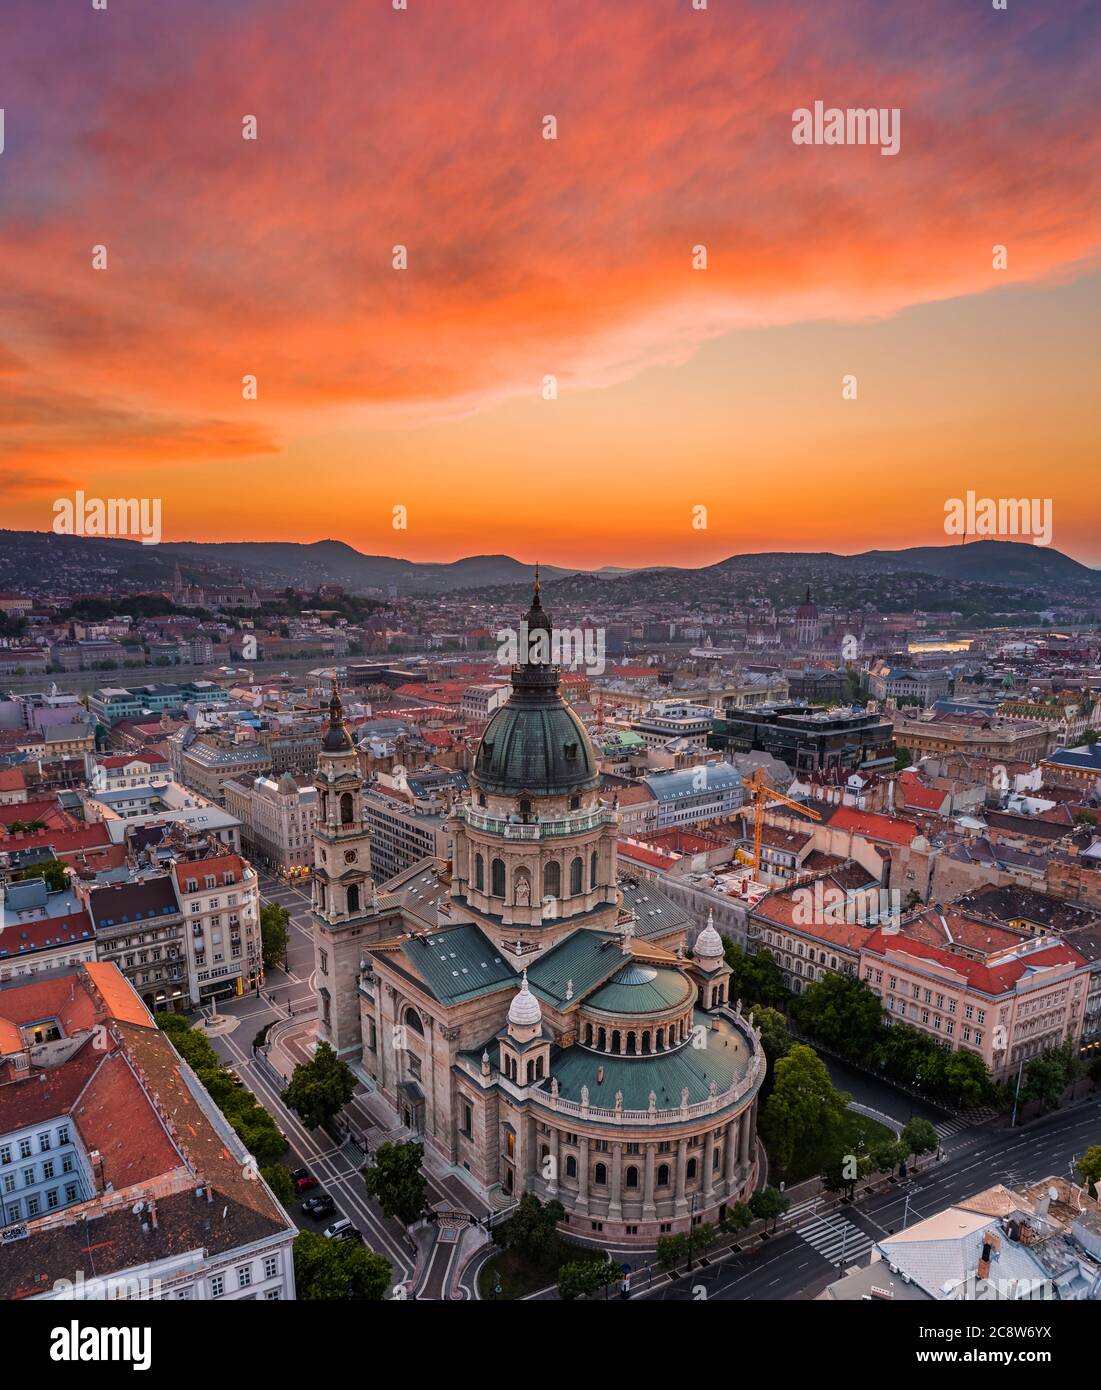 Budapest, Hongrie - vue panoramique aérienne sur la basilique Saint-Étienne avec un coucher de soleil coloré et un Parlement, le Basti des pêcheurs Banque D'Images